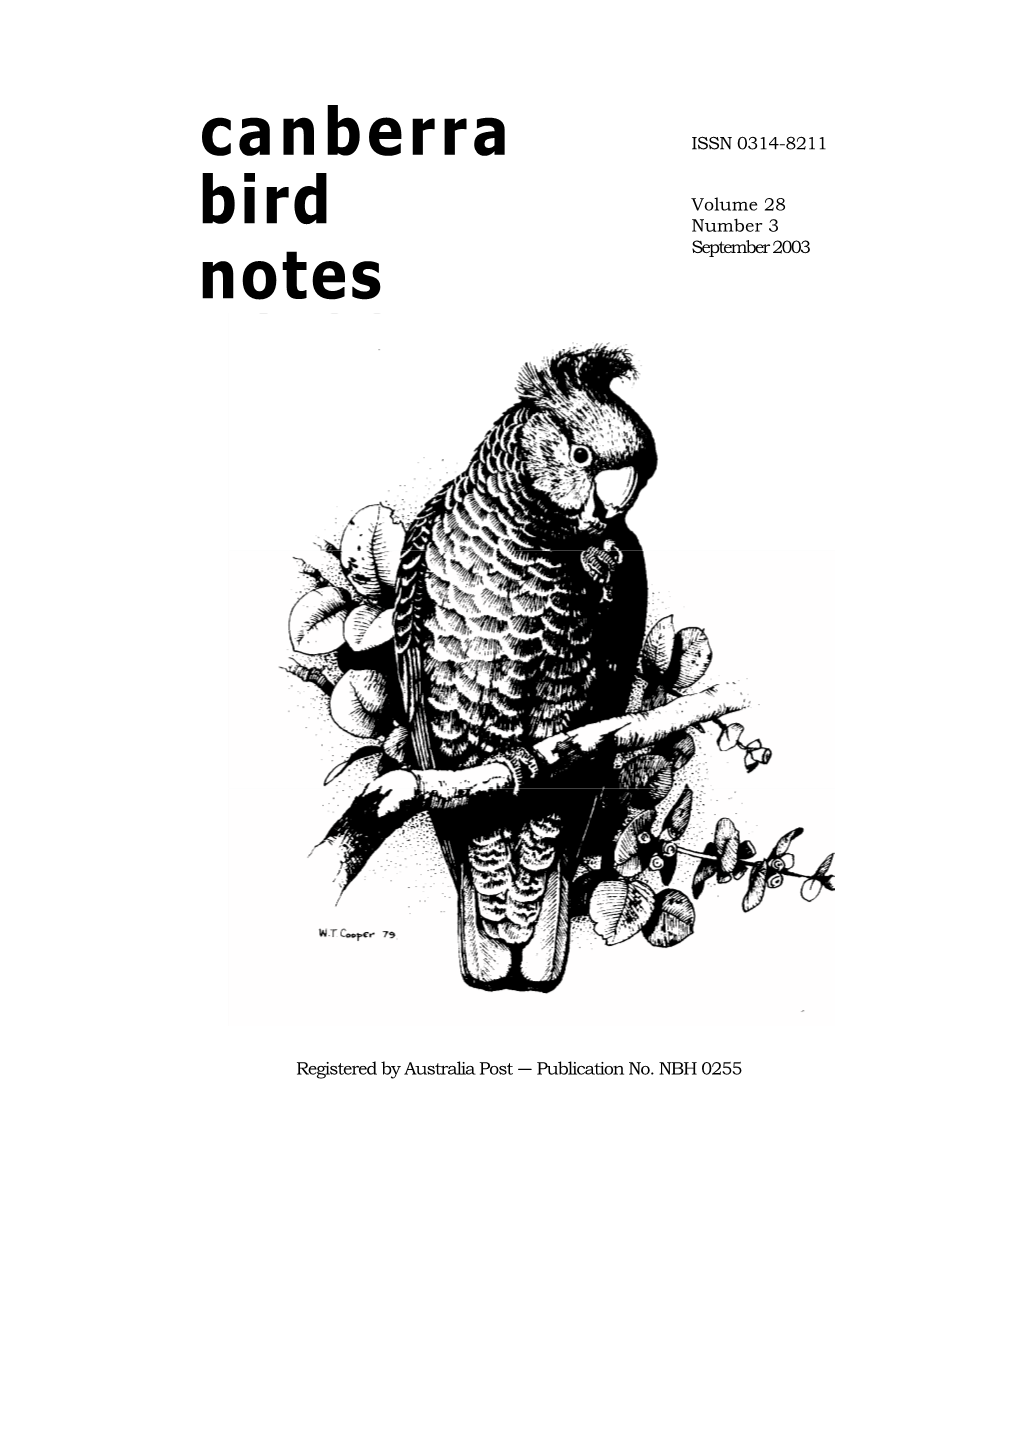 Canberra Bird Notes 28(3) September 2003